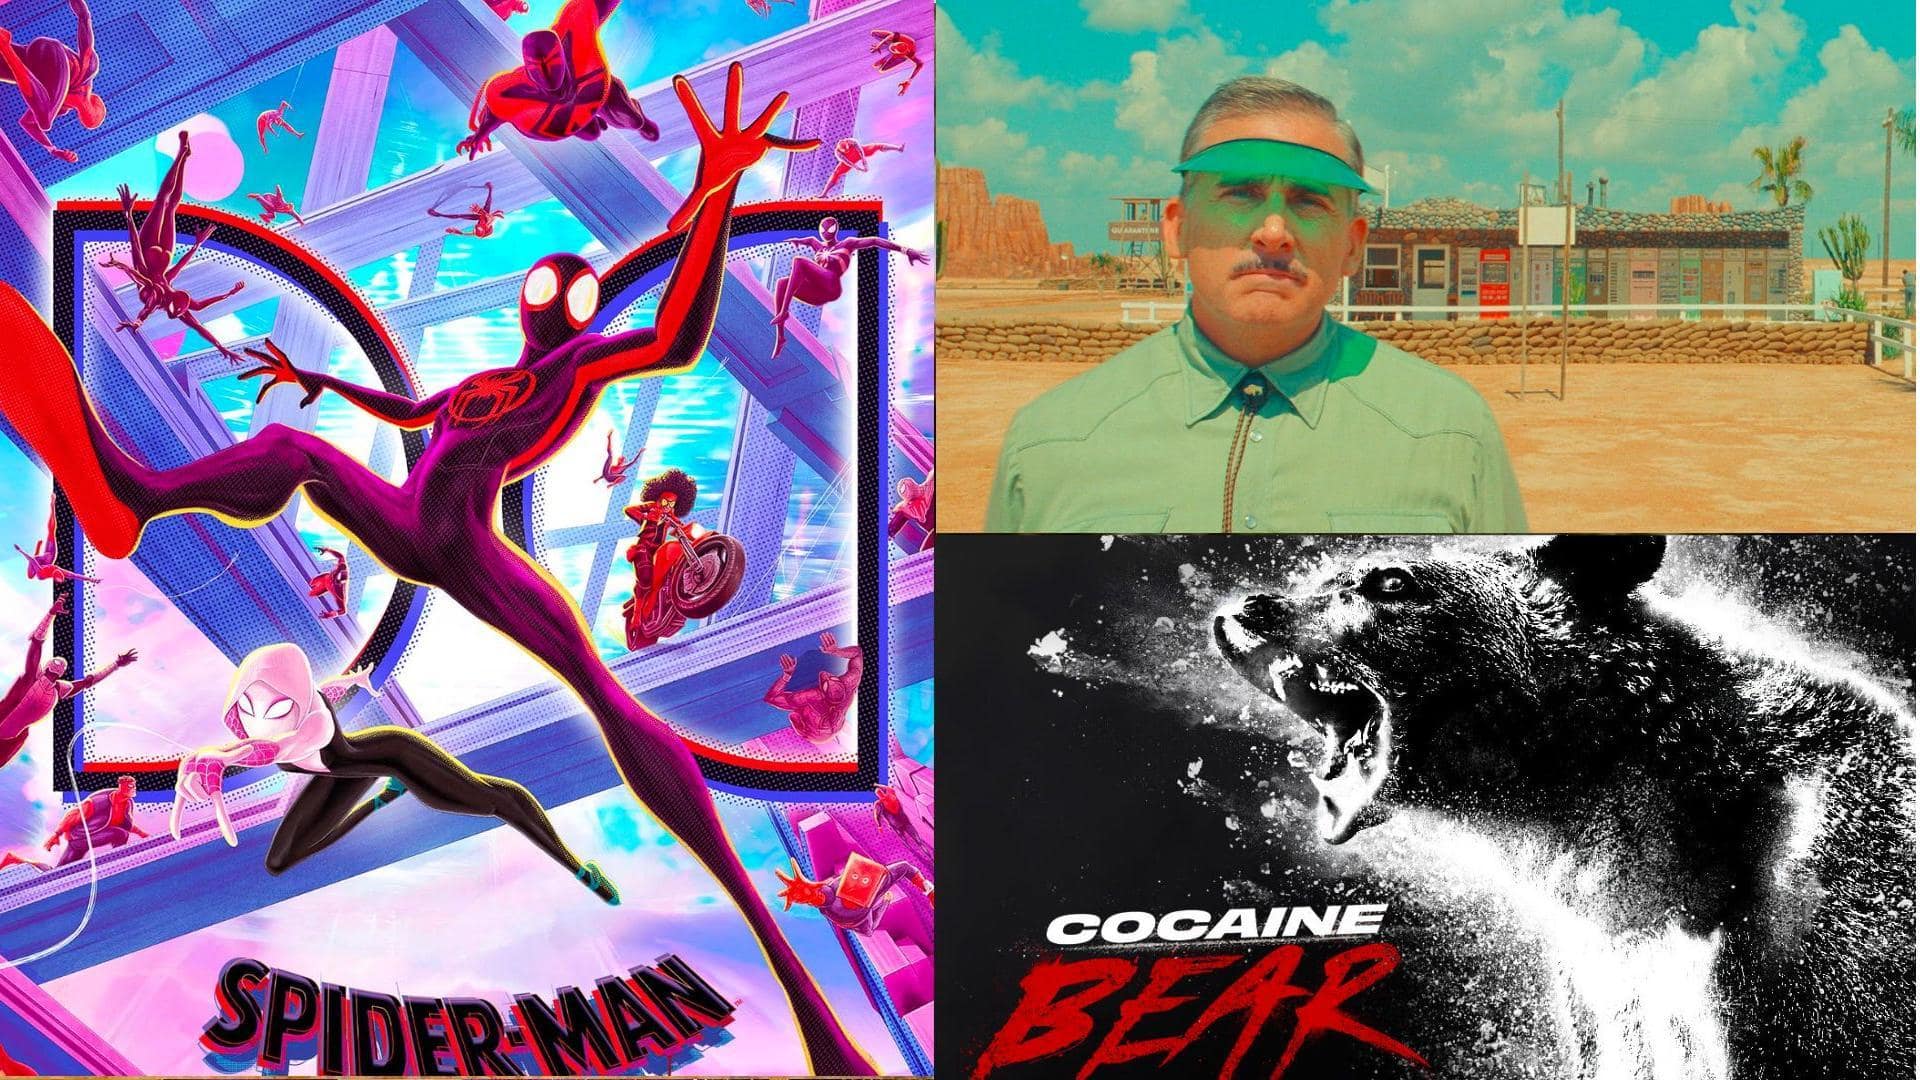 Top 5 movies with Oscar buzz in 2023 (so far)